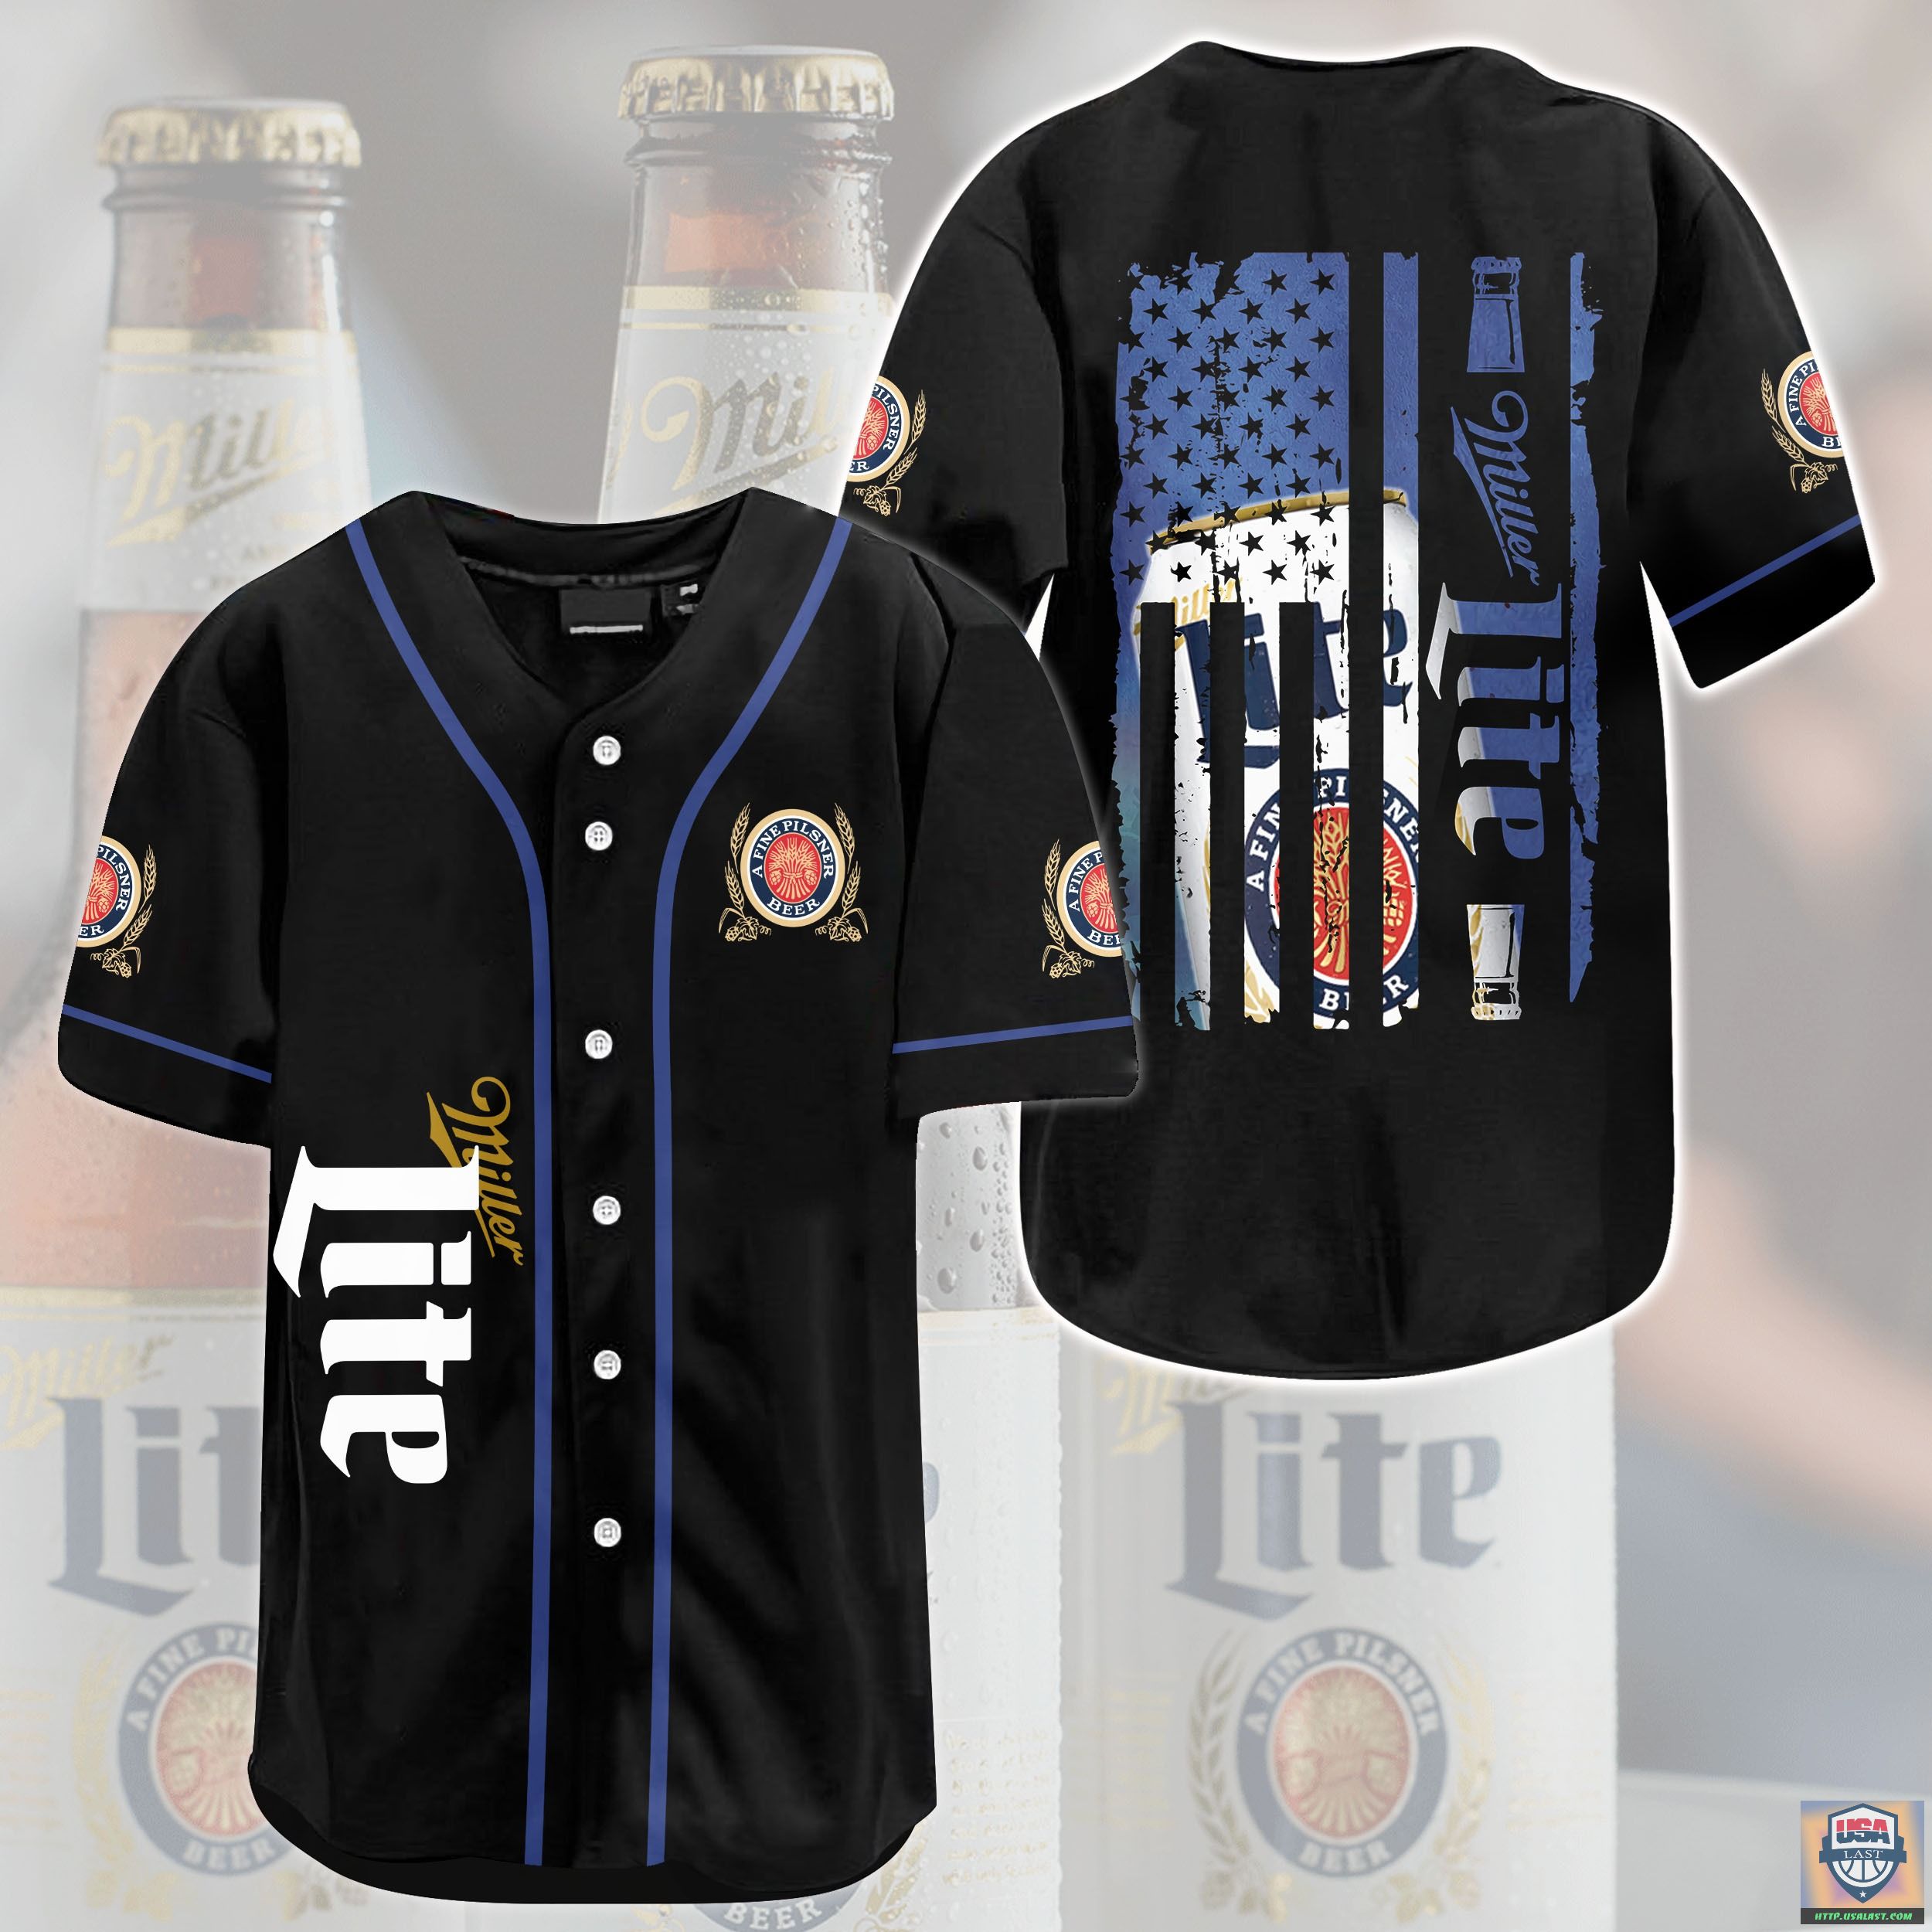 F6ivZgJc-T200722-80xxxMiller-Lite-U.S-Flag-Baseball-Jersey-Shirt.jpg